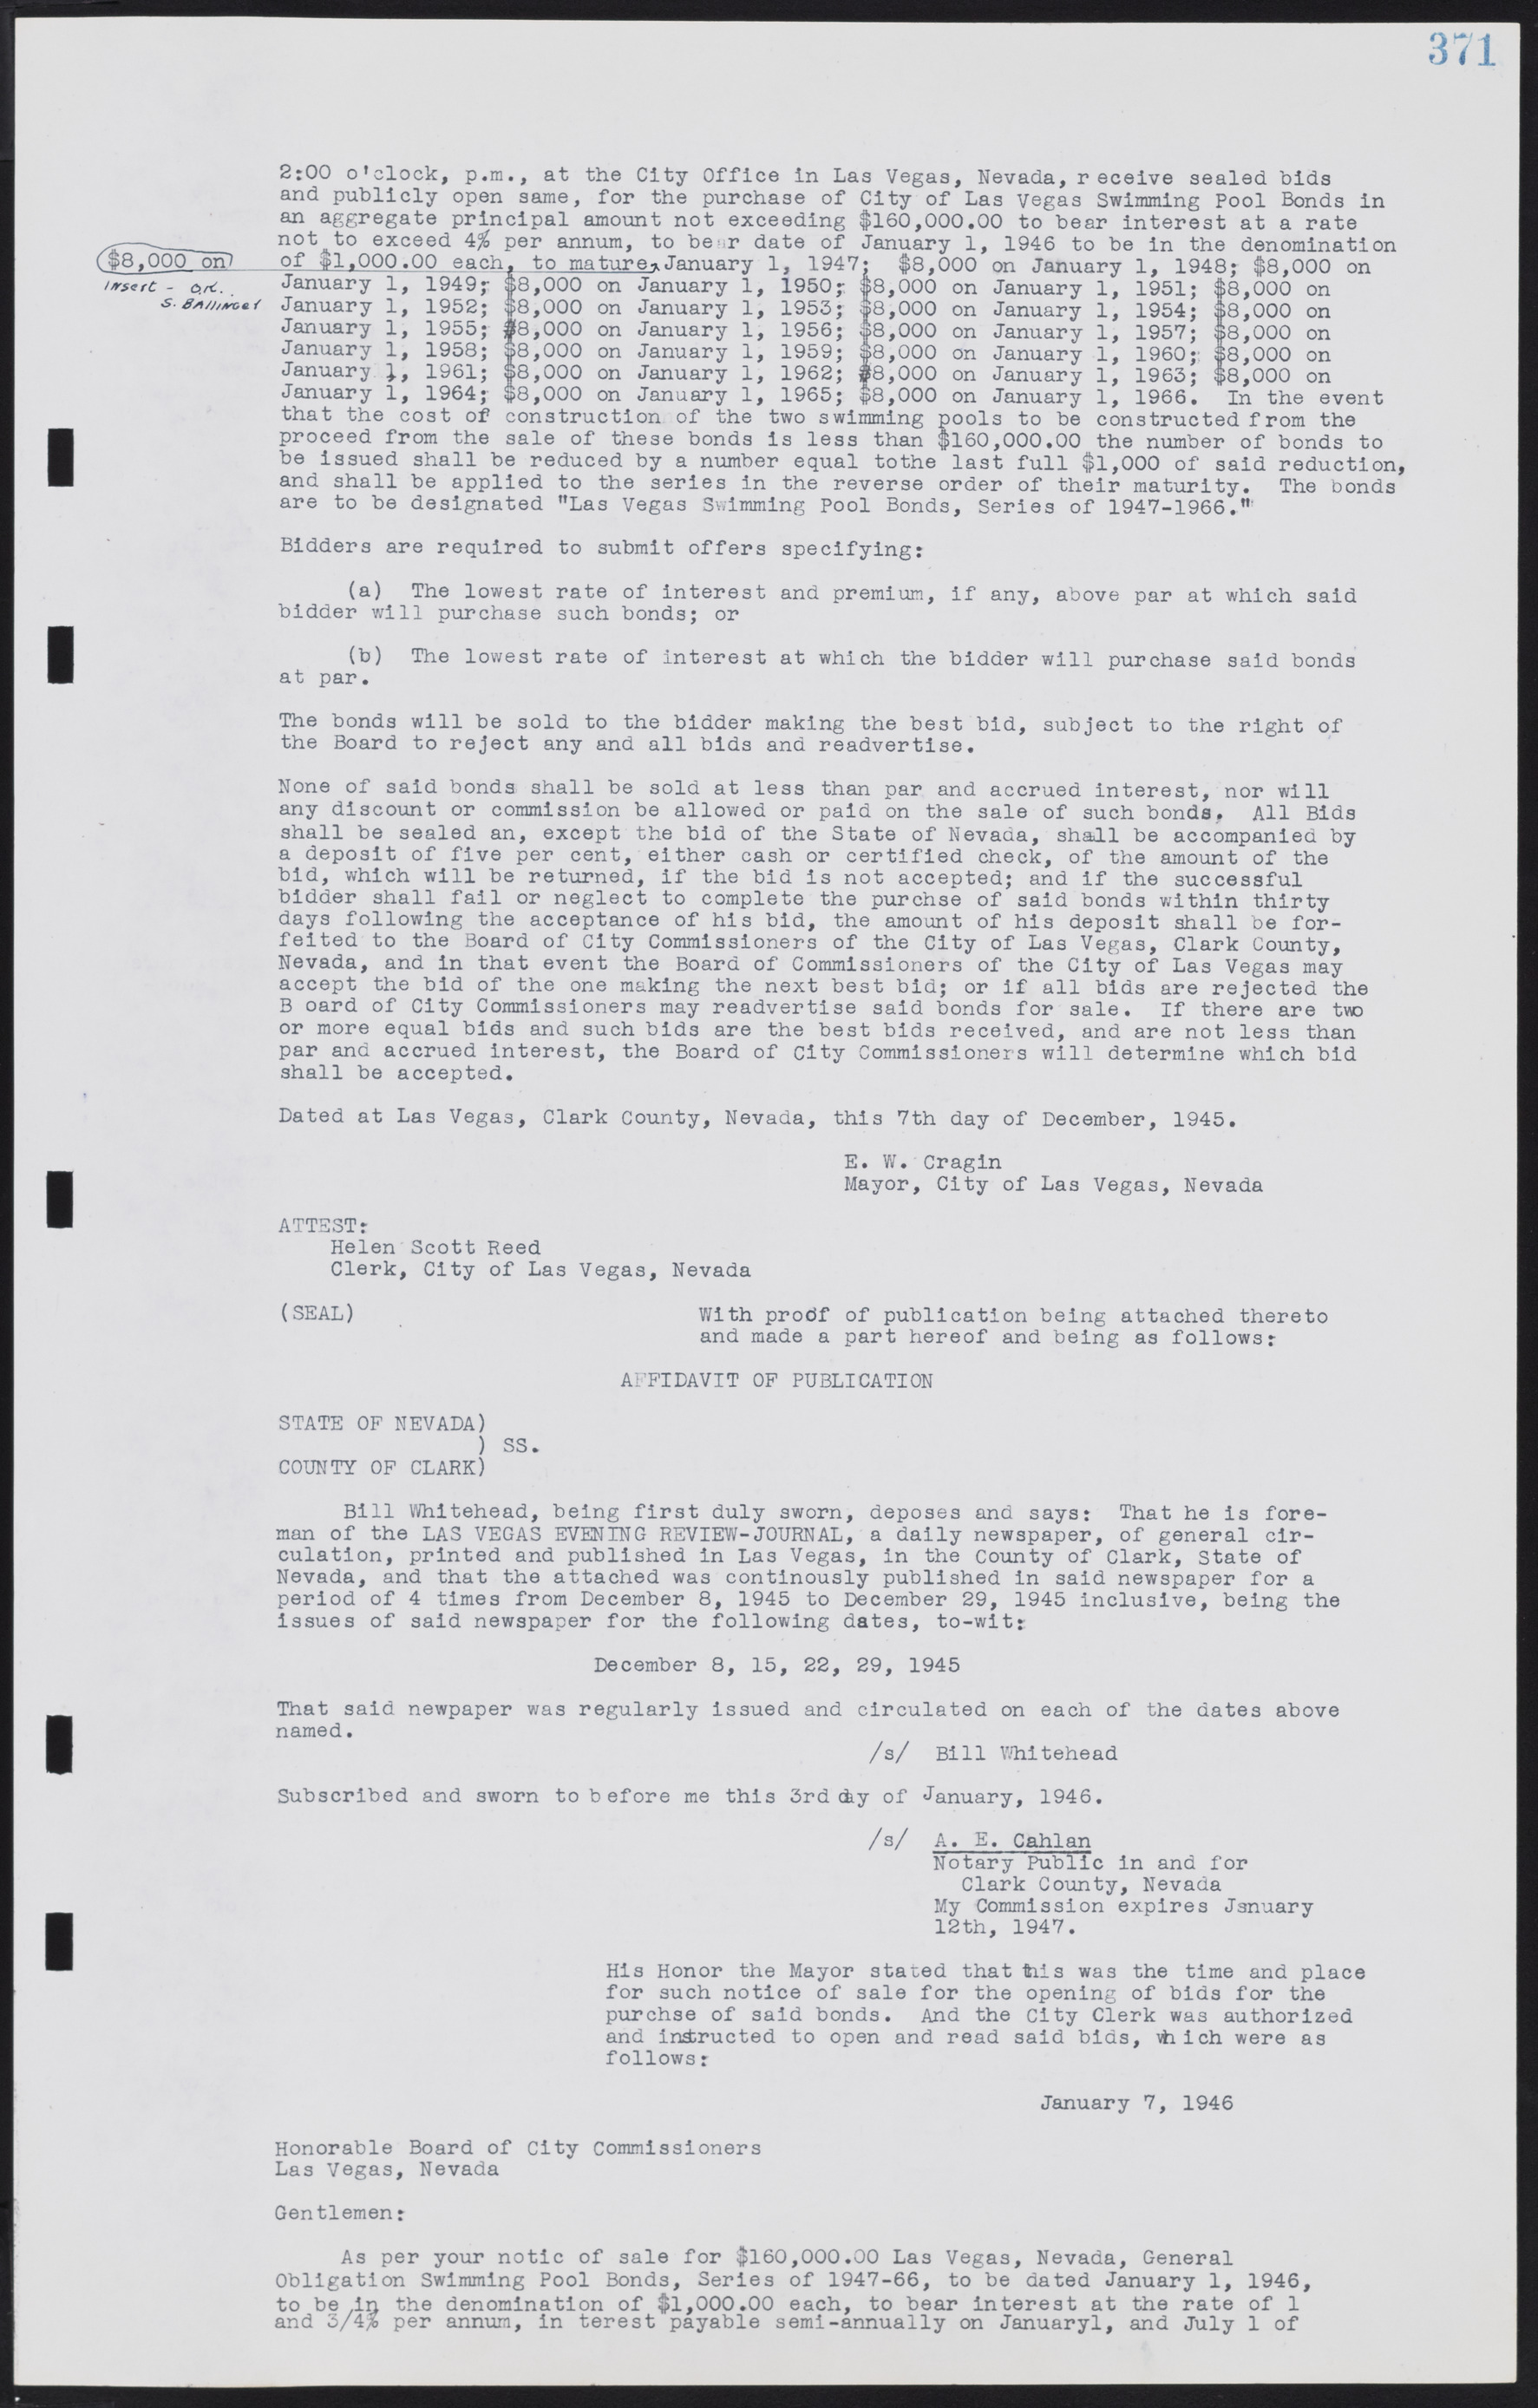 Las Vegas City Commission Minutes, August 11, 1942 to December 30, 1946, lvc000005-398